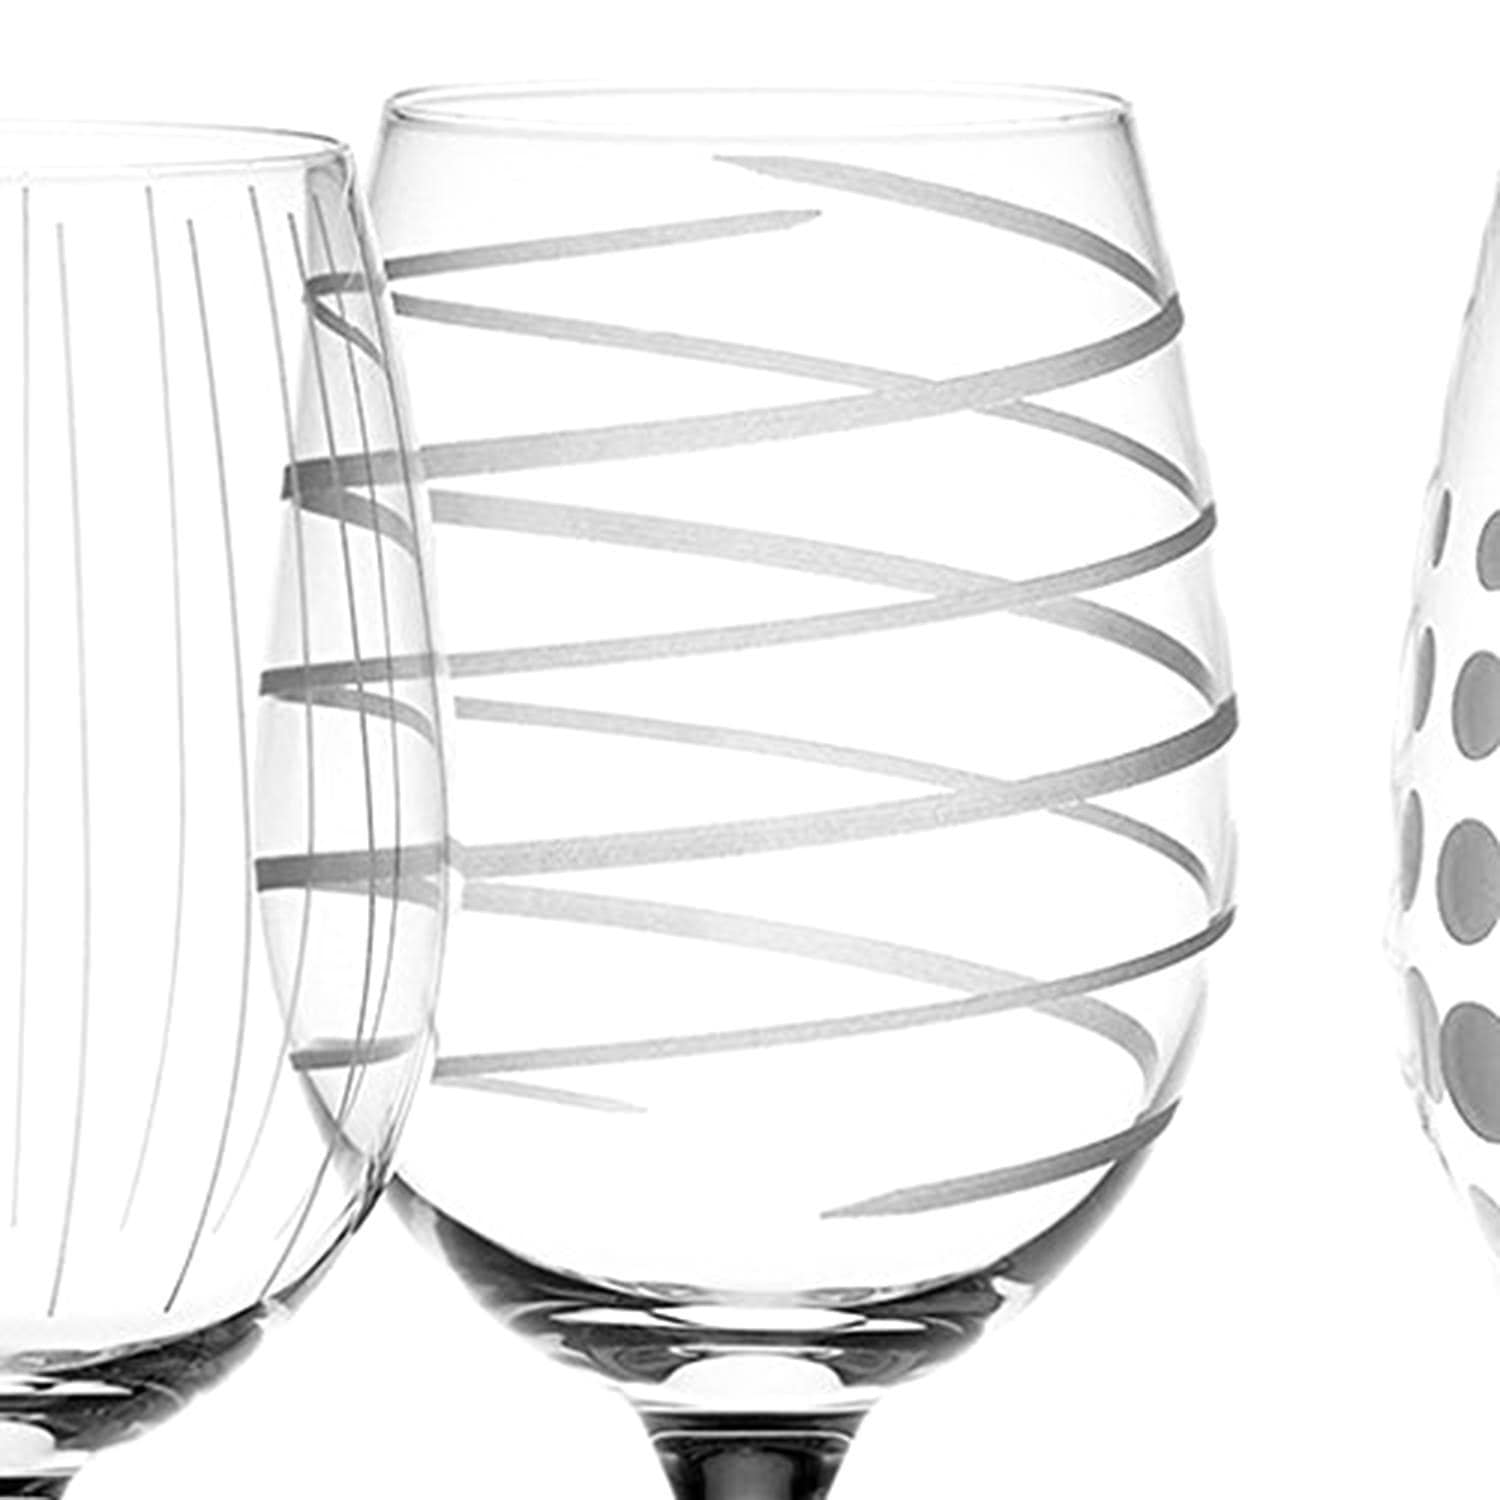 الإبداعية قمم Mikasa هتاف النبيذ مجموعة الزجاج - واضحة والفضية، 473 مل، 4 قطعة - 5159282 - Jashanmal الرئيسية